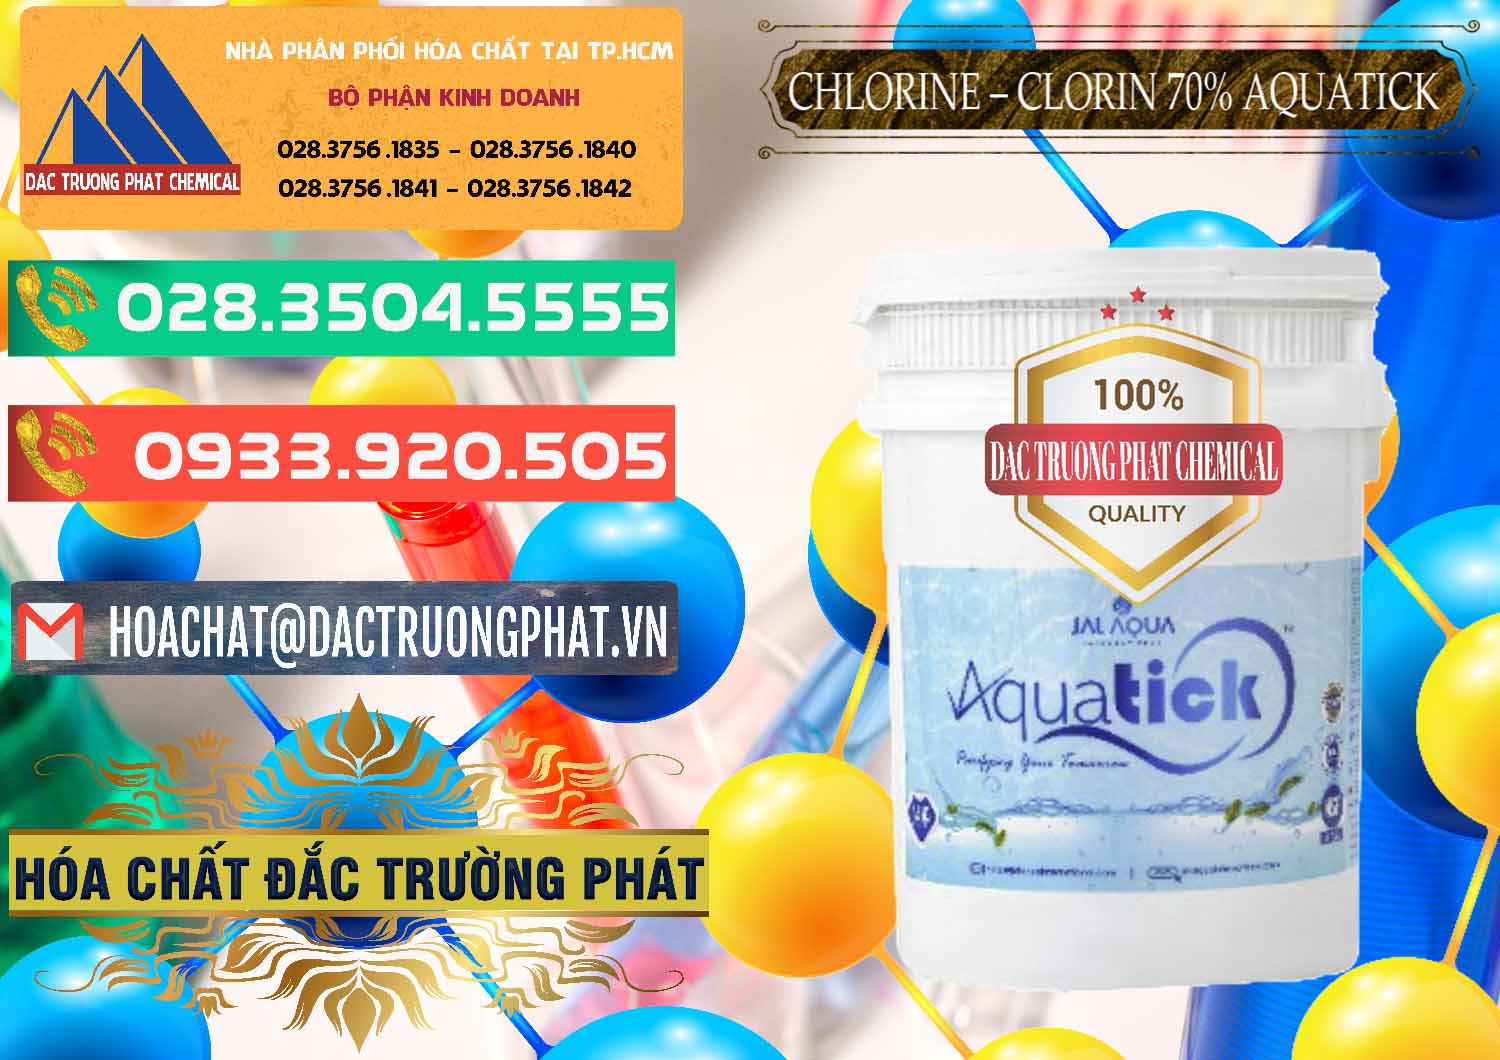 Công ty chuyên phân phối _ bán Chlorine – Clorin 70% Aquatick Thùng Cao Jal Aqua Ấn Độ India - 0237 - Đơn vị cung cấp và phân phối hóa chất tại TP.HCM - congtyhoachat.com.vn